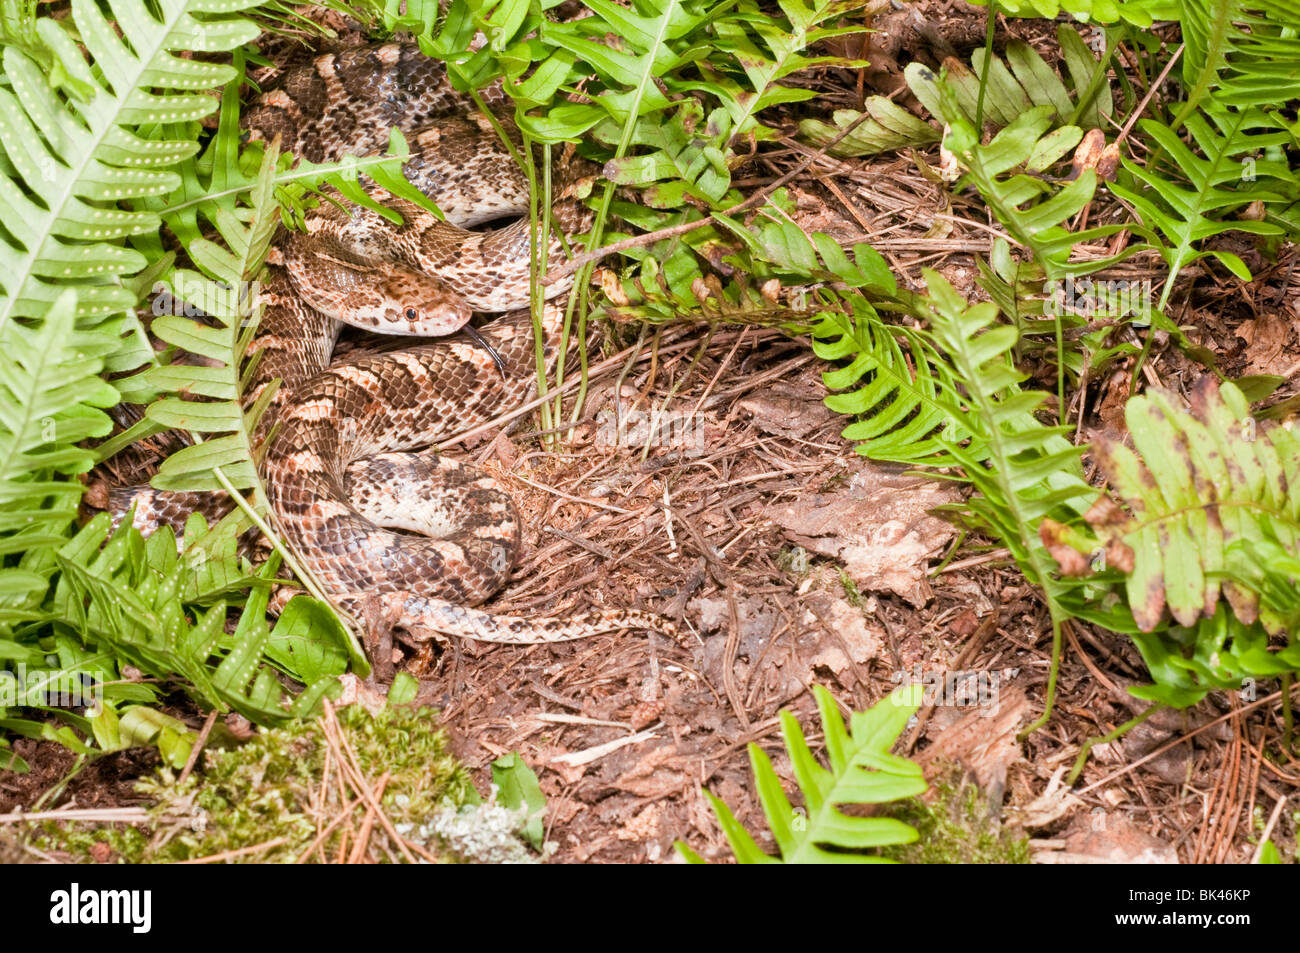 California serpente lucido, Arizona elegans occidentalis, nativo a sudovest degli Stati Uniti Foto Stock